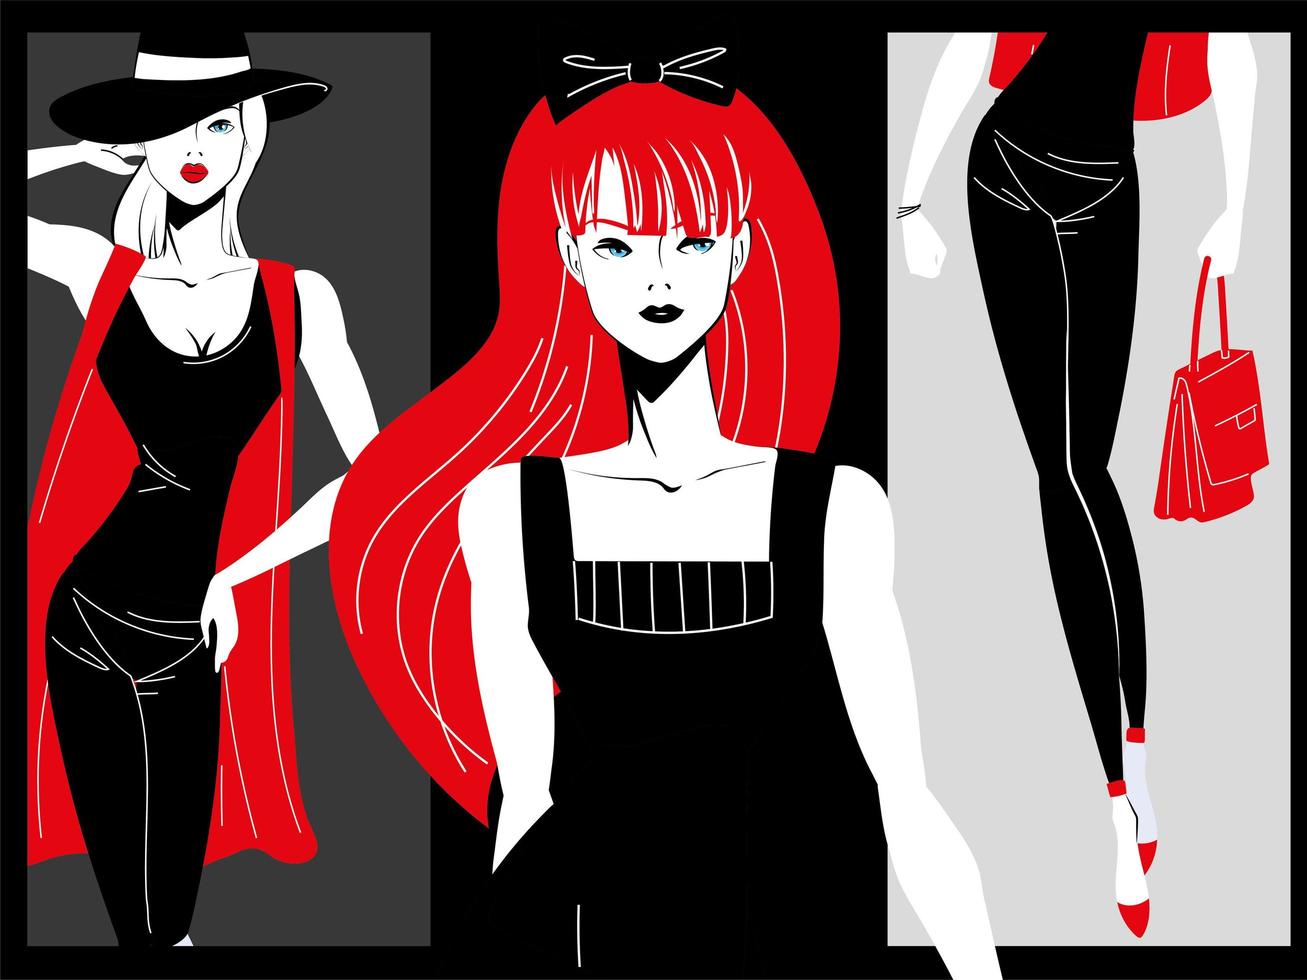 zwarte en rode retro fashion modellen vector